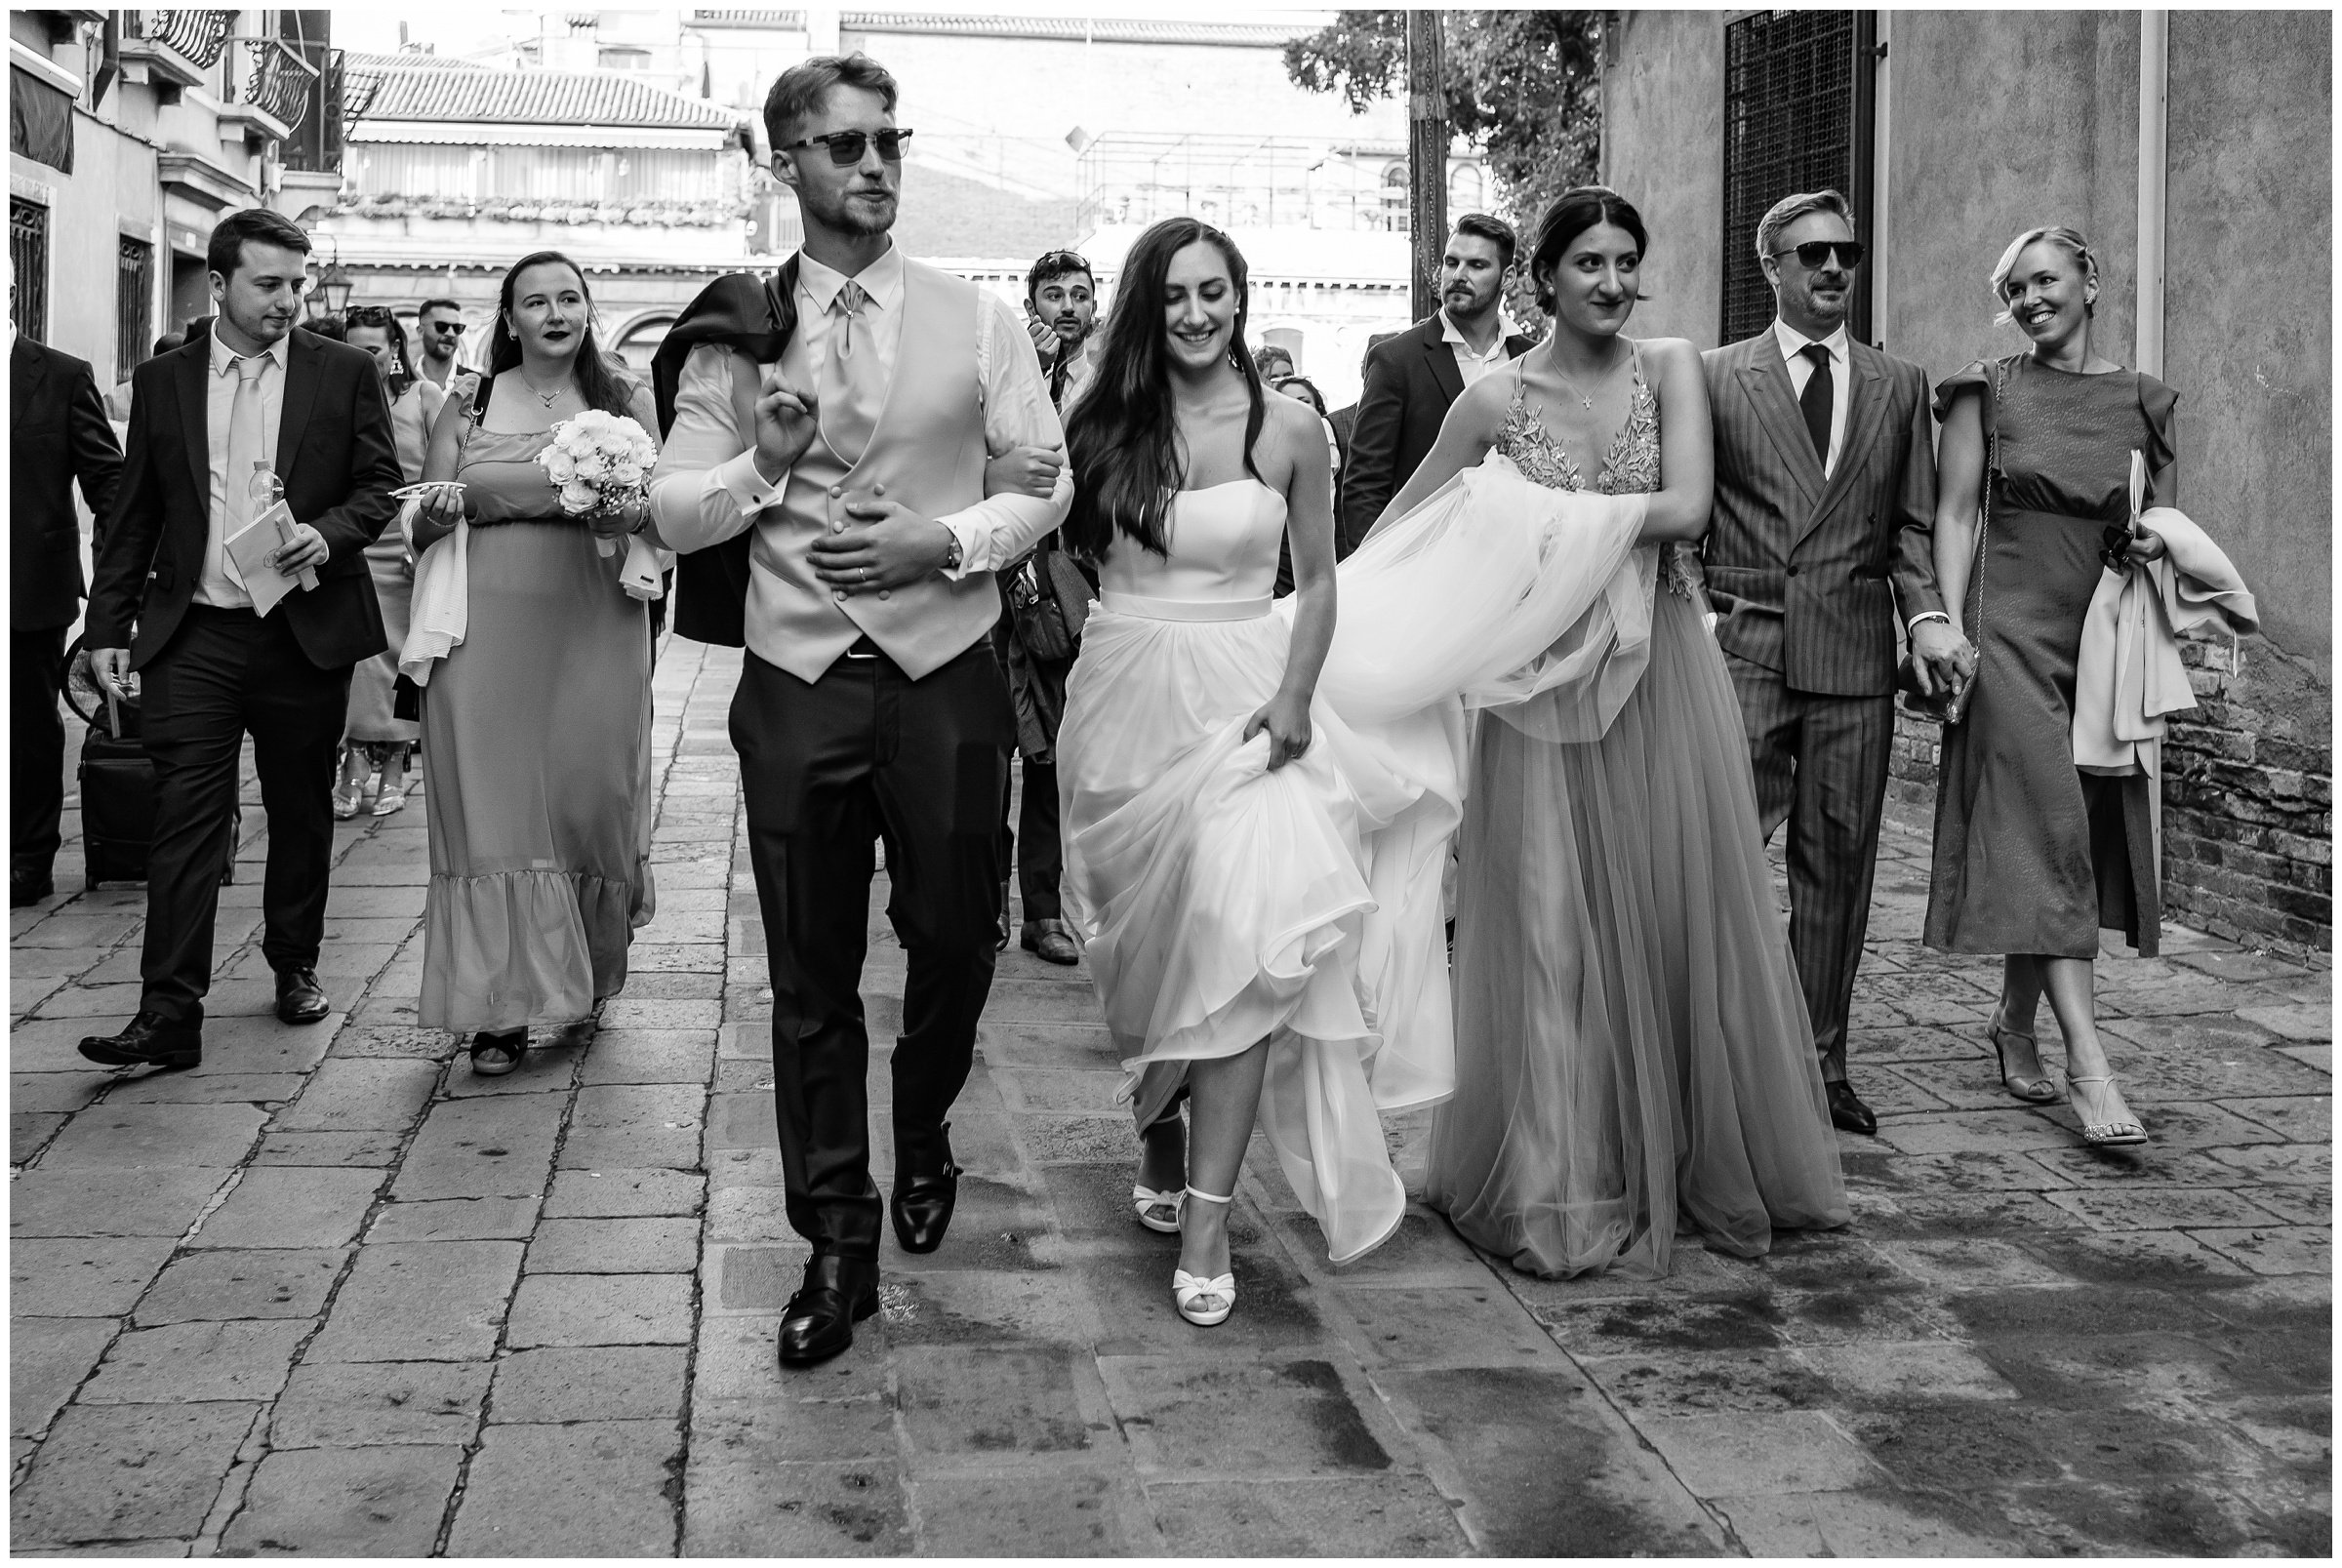 Matrimonio-san-servolo-fotografo-matrimonio-treviso-fotografo-matrimonio-venezia_0118.jpg